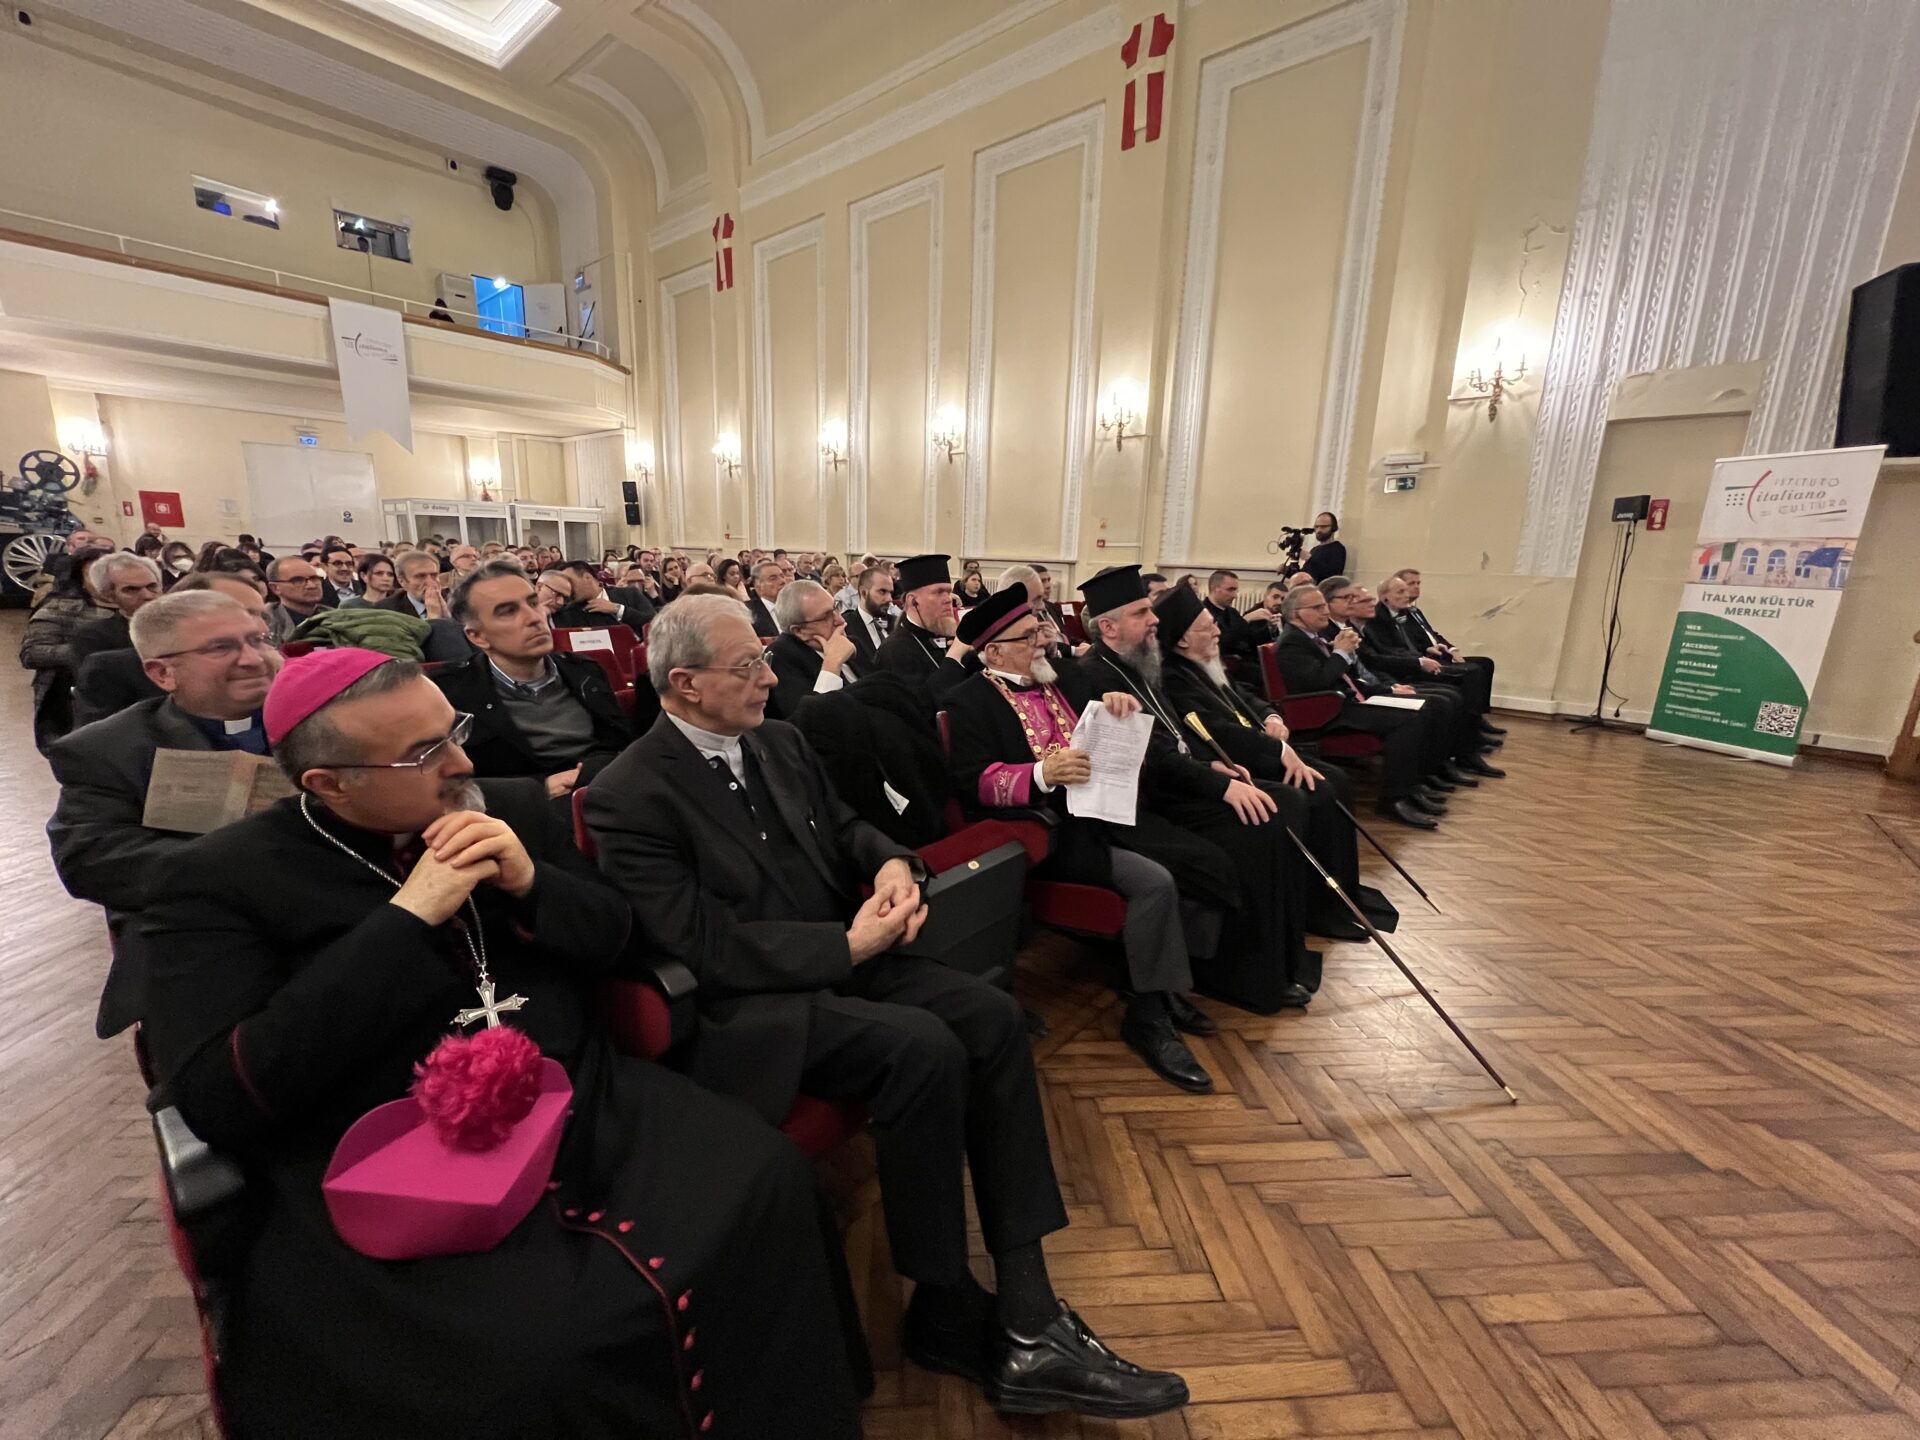 Οικουμενικός Πατριάρχης Μόνο μέσω του διαλόγου θα τερματιστούν οι πράξεις βίας και τρόμου